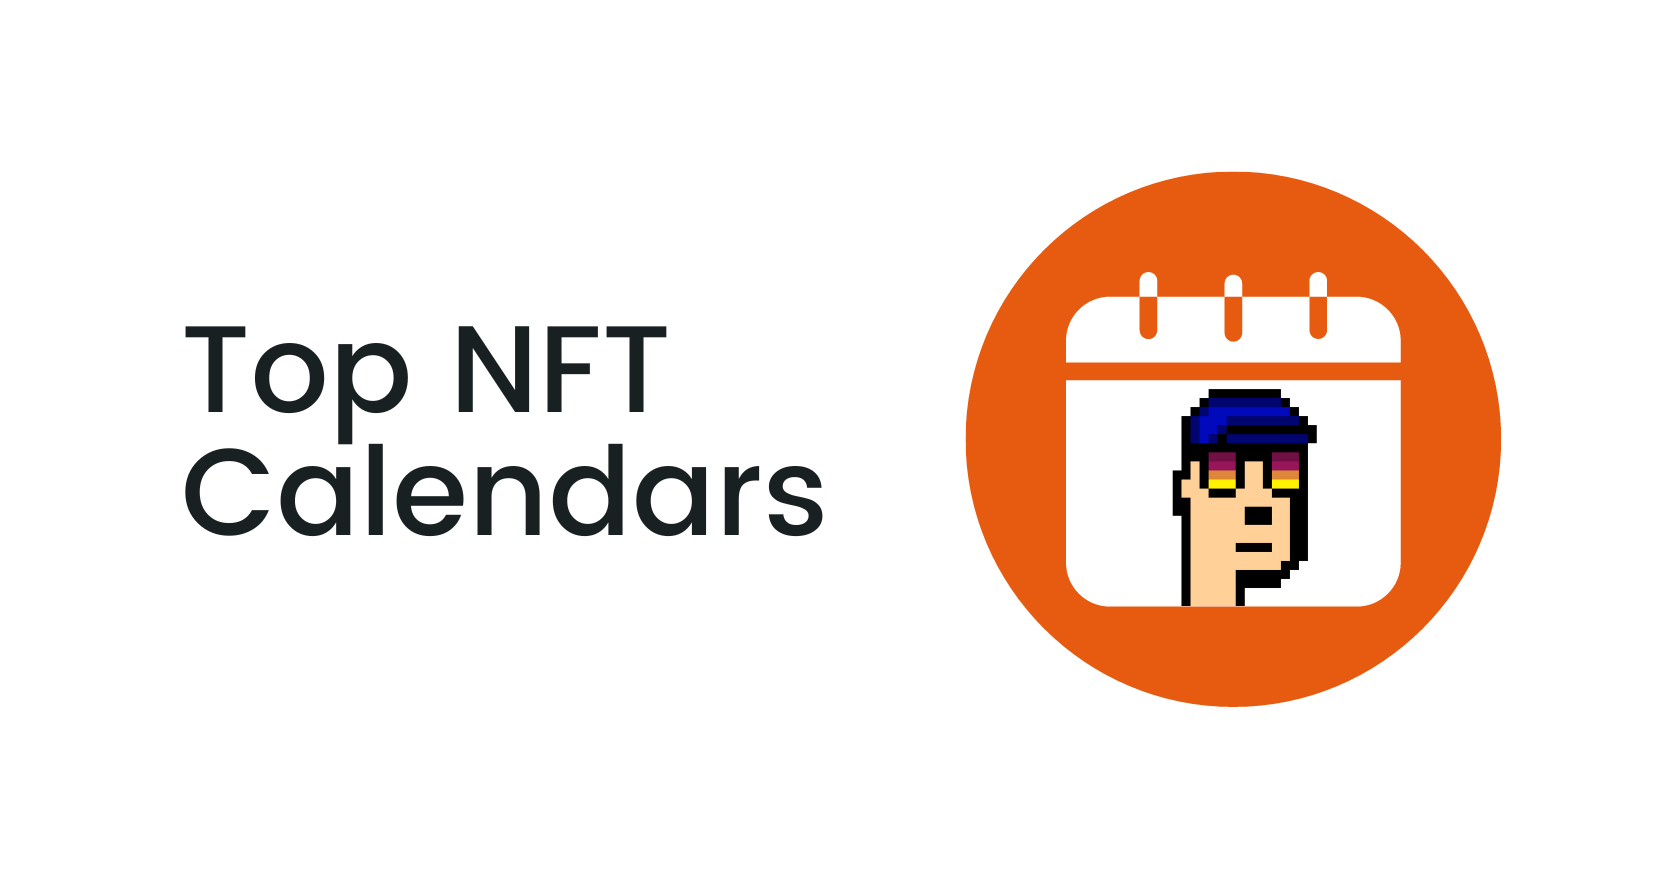 Top NFT Calendars